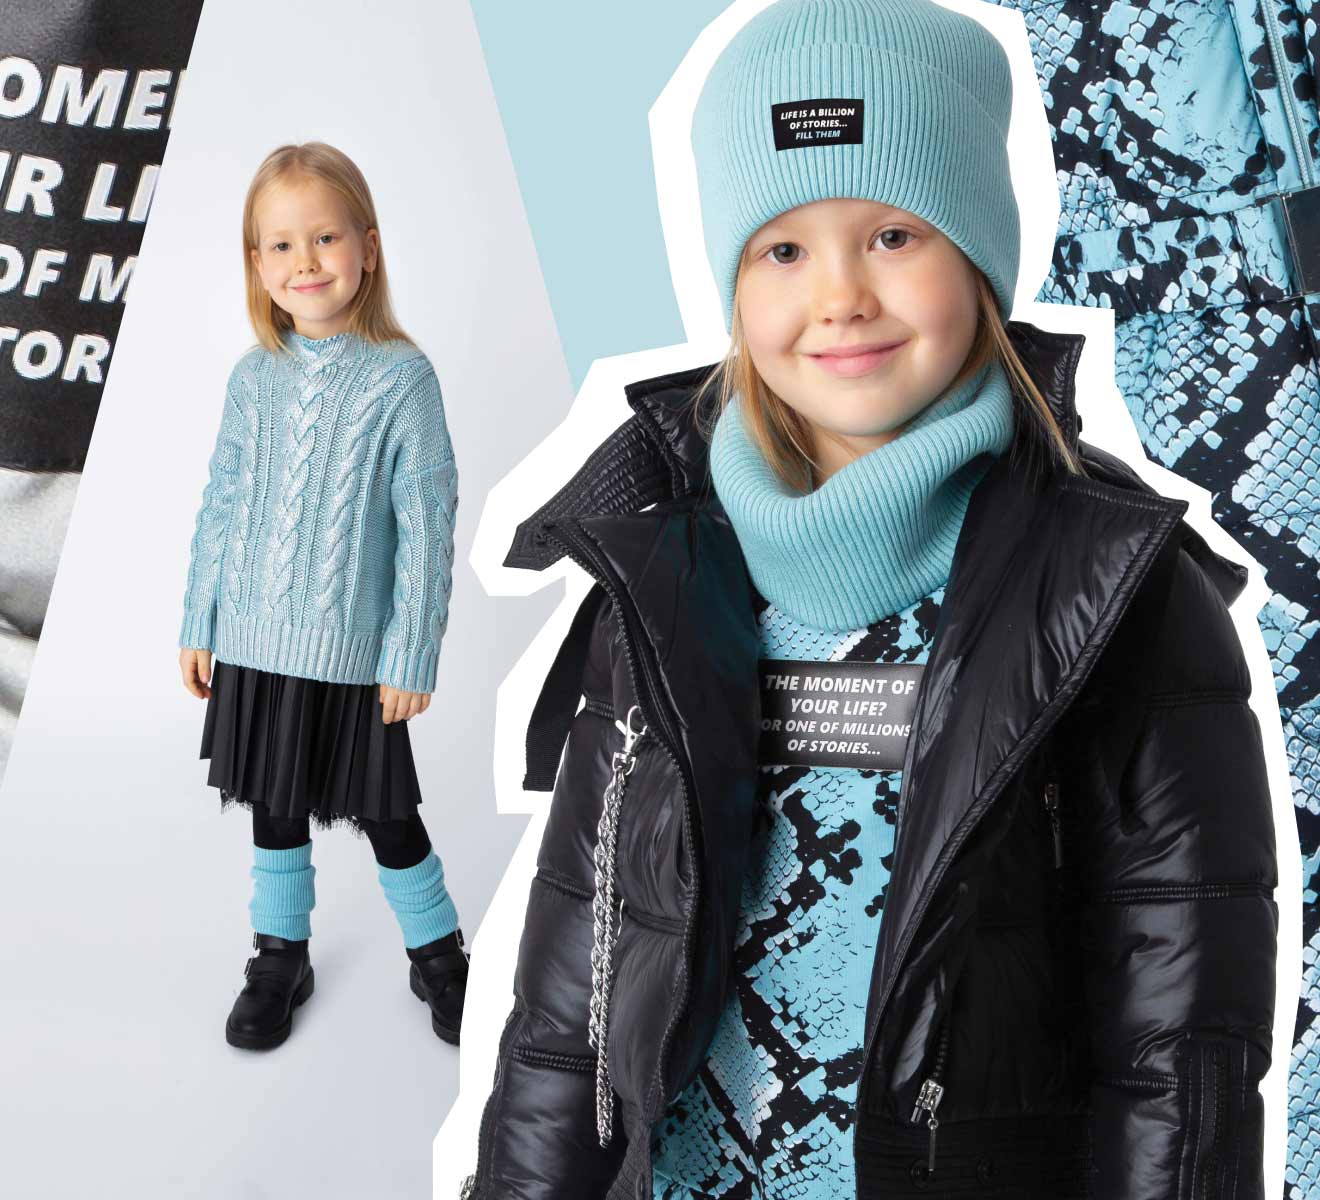 Детская Одежда Зима Распродажа Интернет Магазин